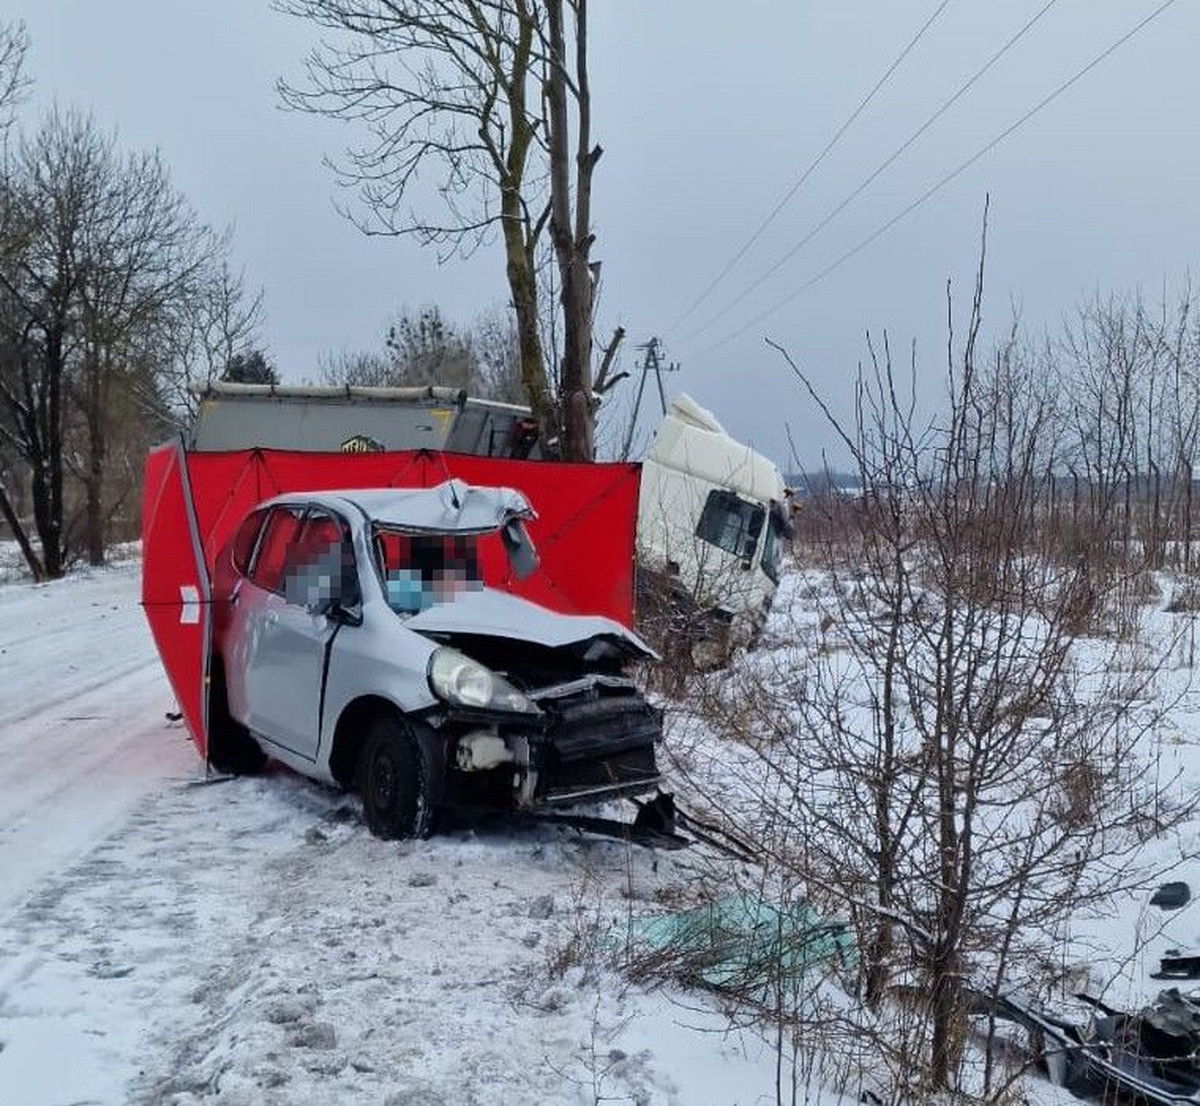 Tragiczny wypadek w Lubelskiem. 19-latek zginął na miejscu